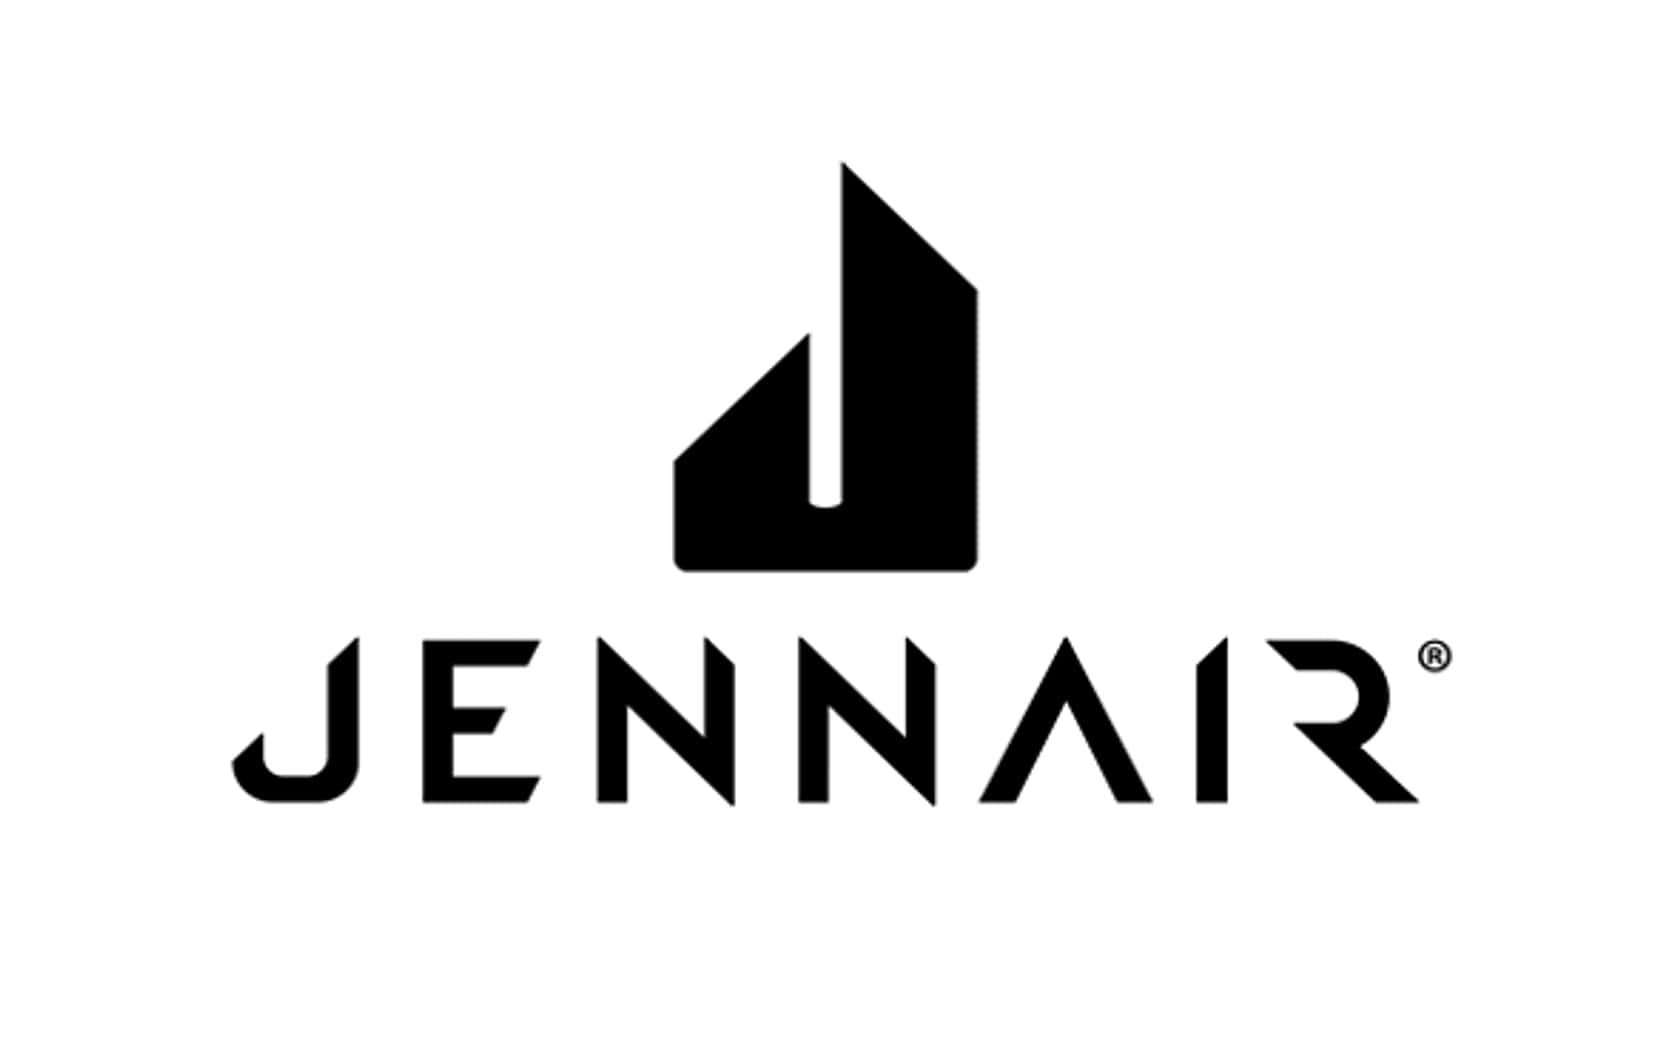 Jennair company logo